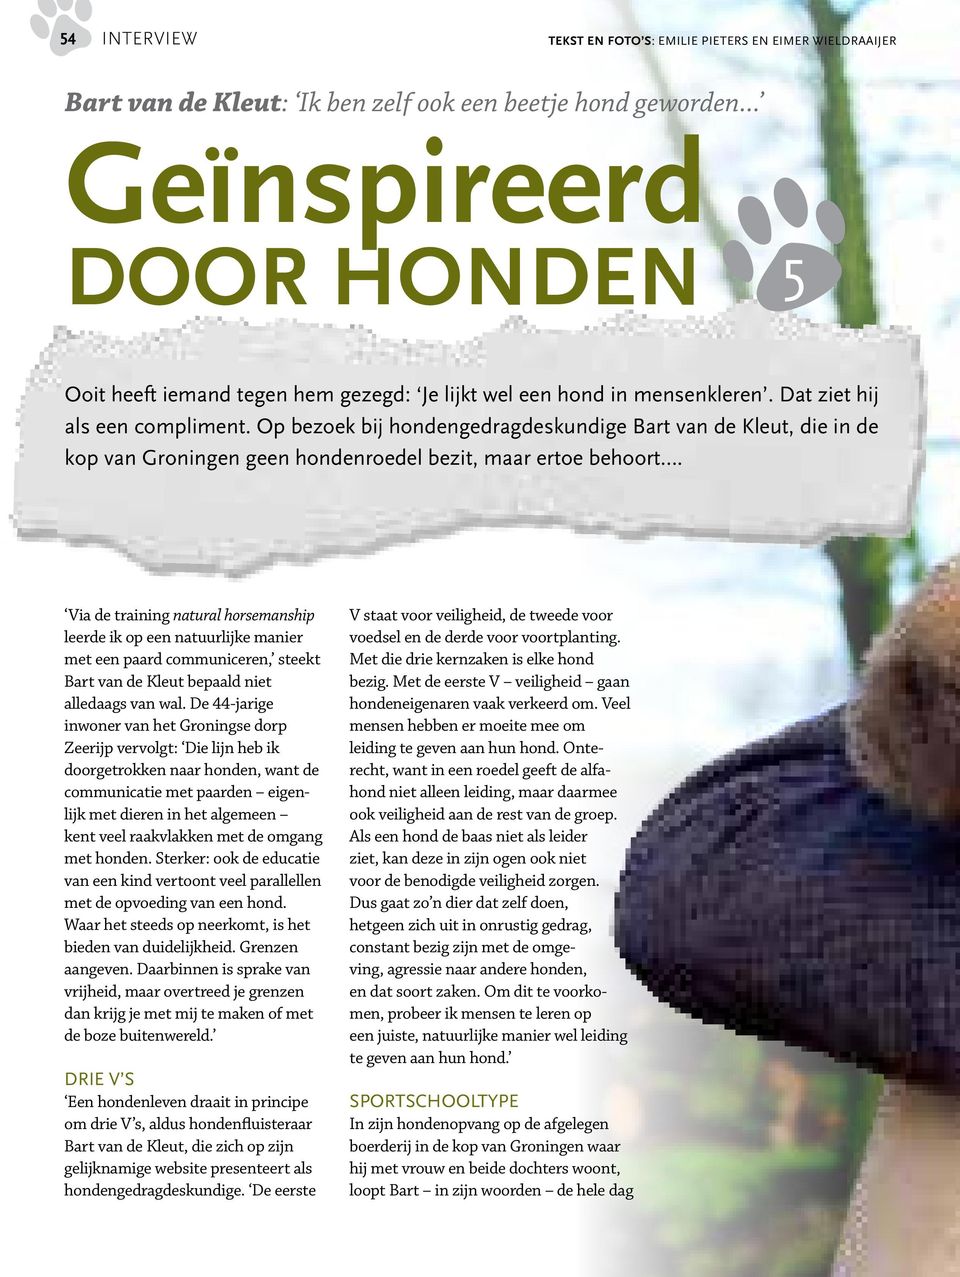 Op bezoek bij hondengedragdeskundige Bart van de Kleut, die in de kop van Groningen geen hondenroedel bezit, maar ertoe behoort.